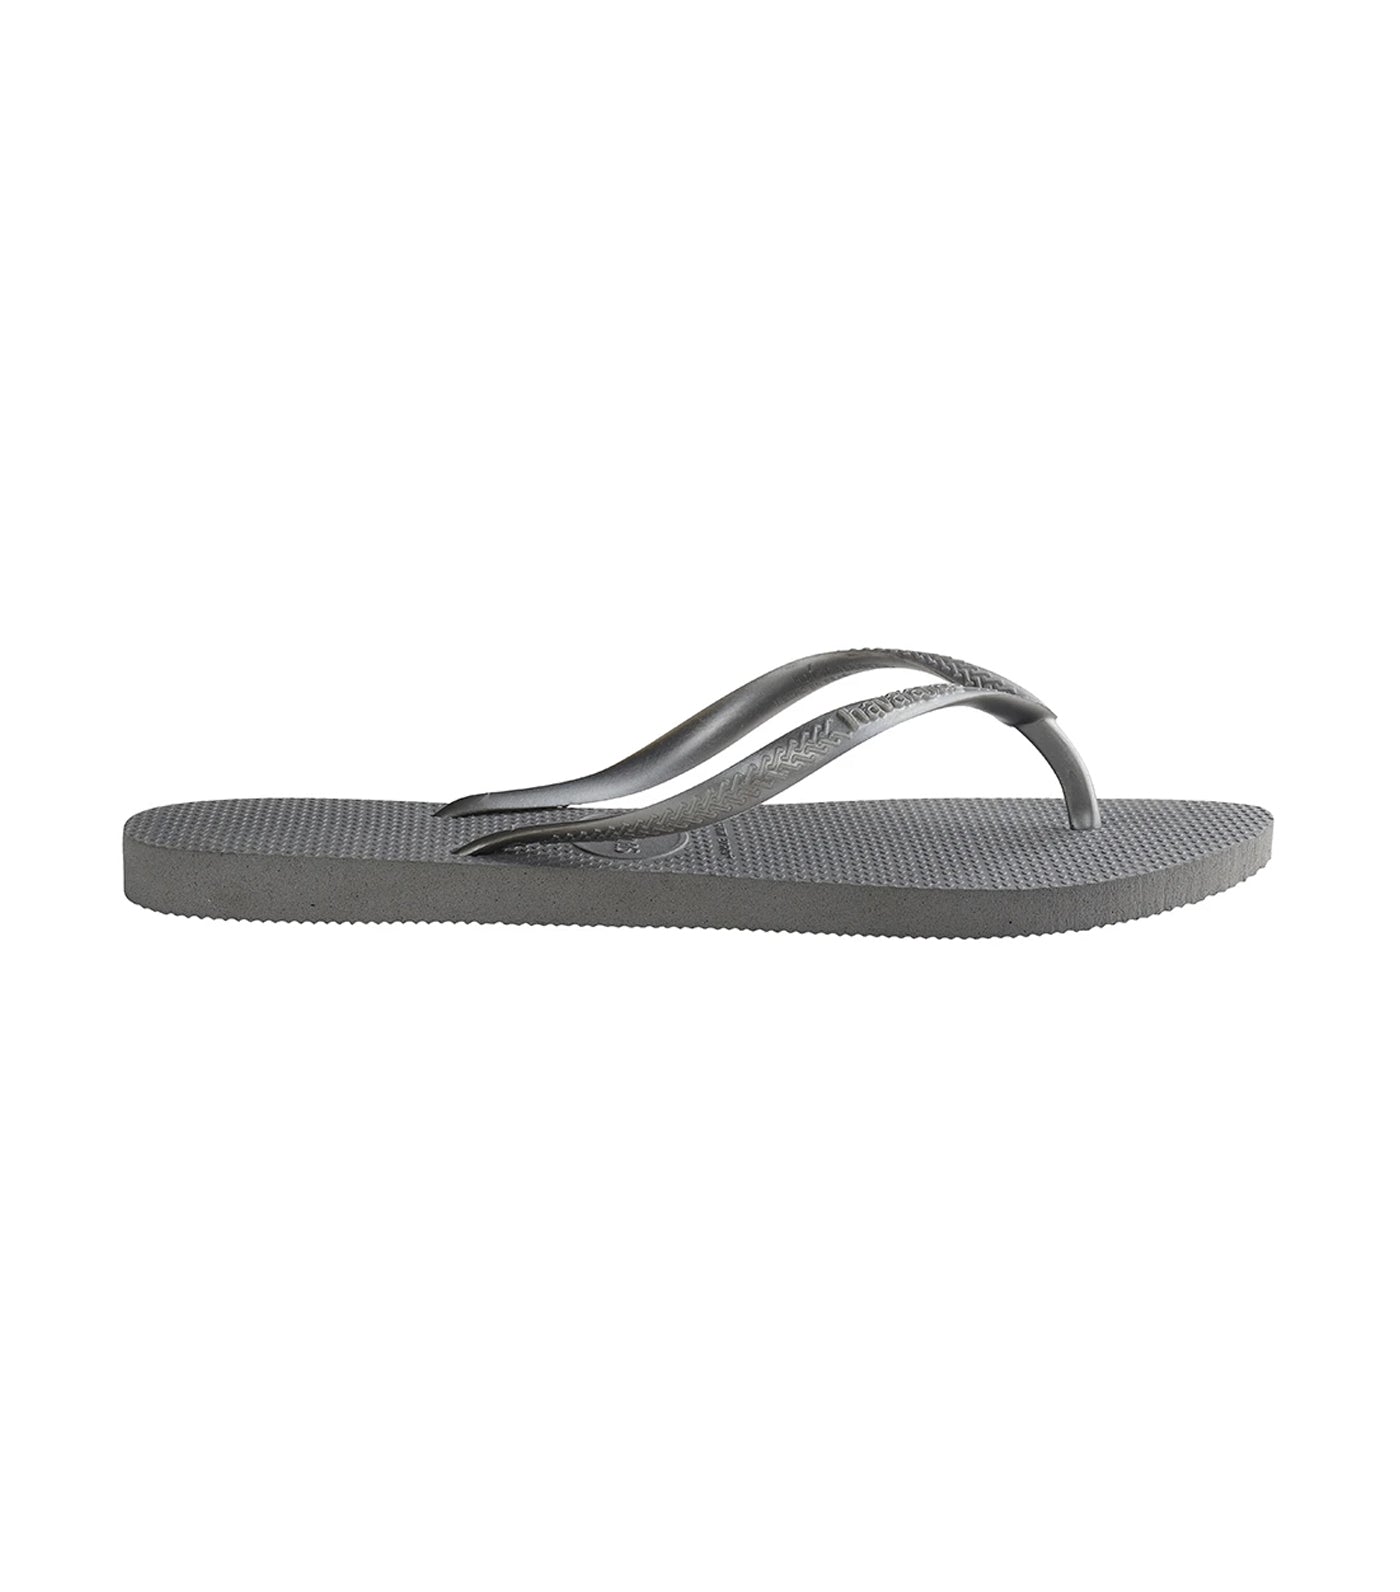 Women's Slim Flip Flops - Steel Gray